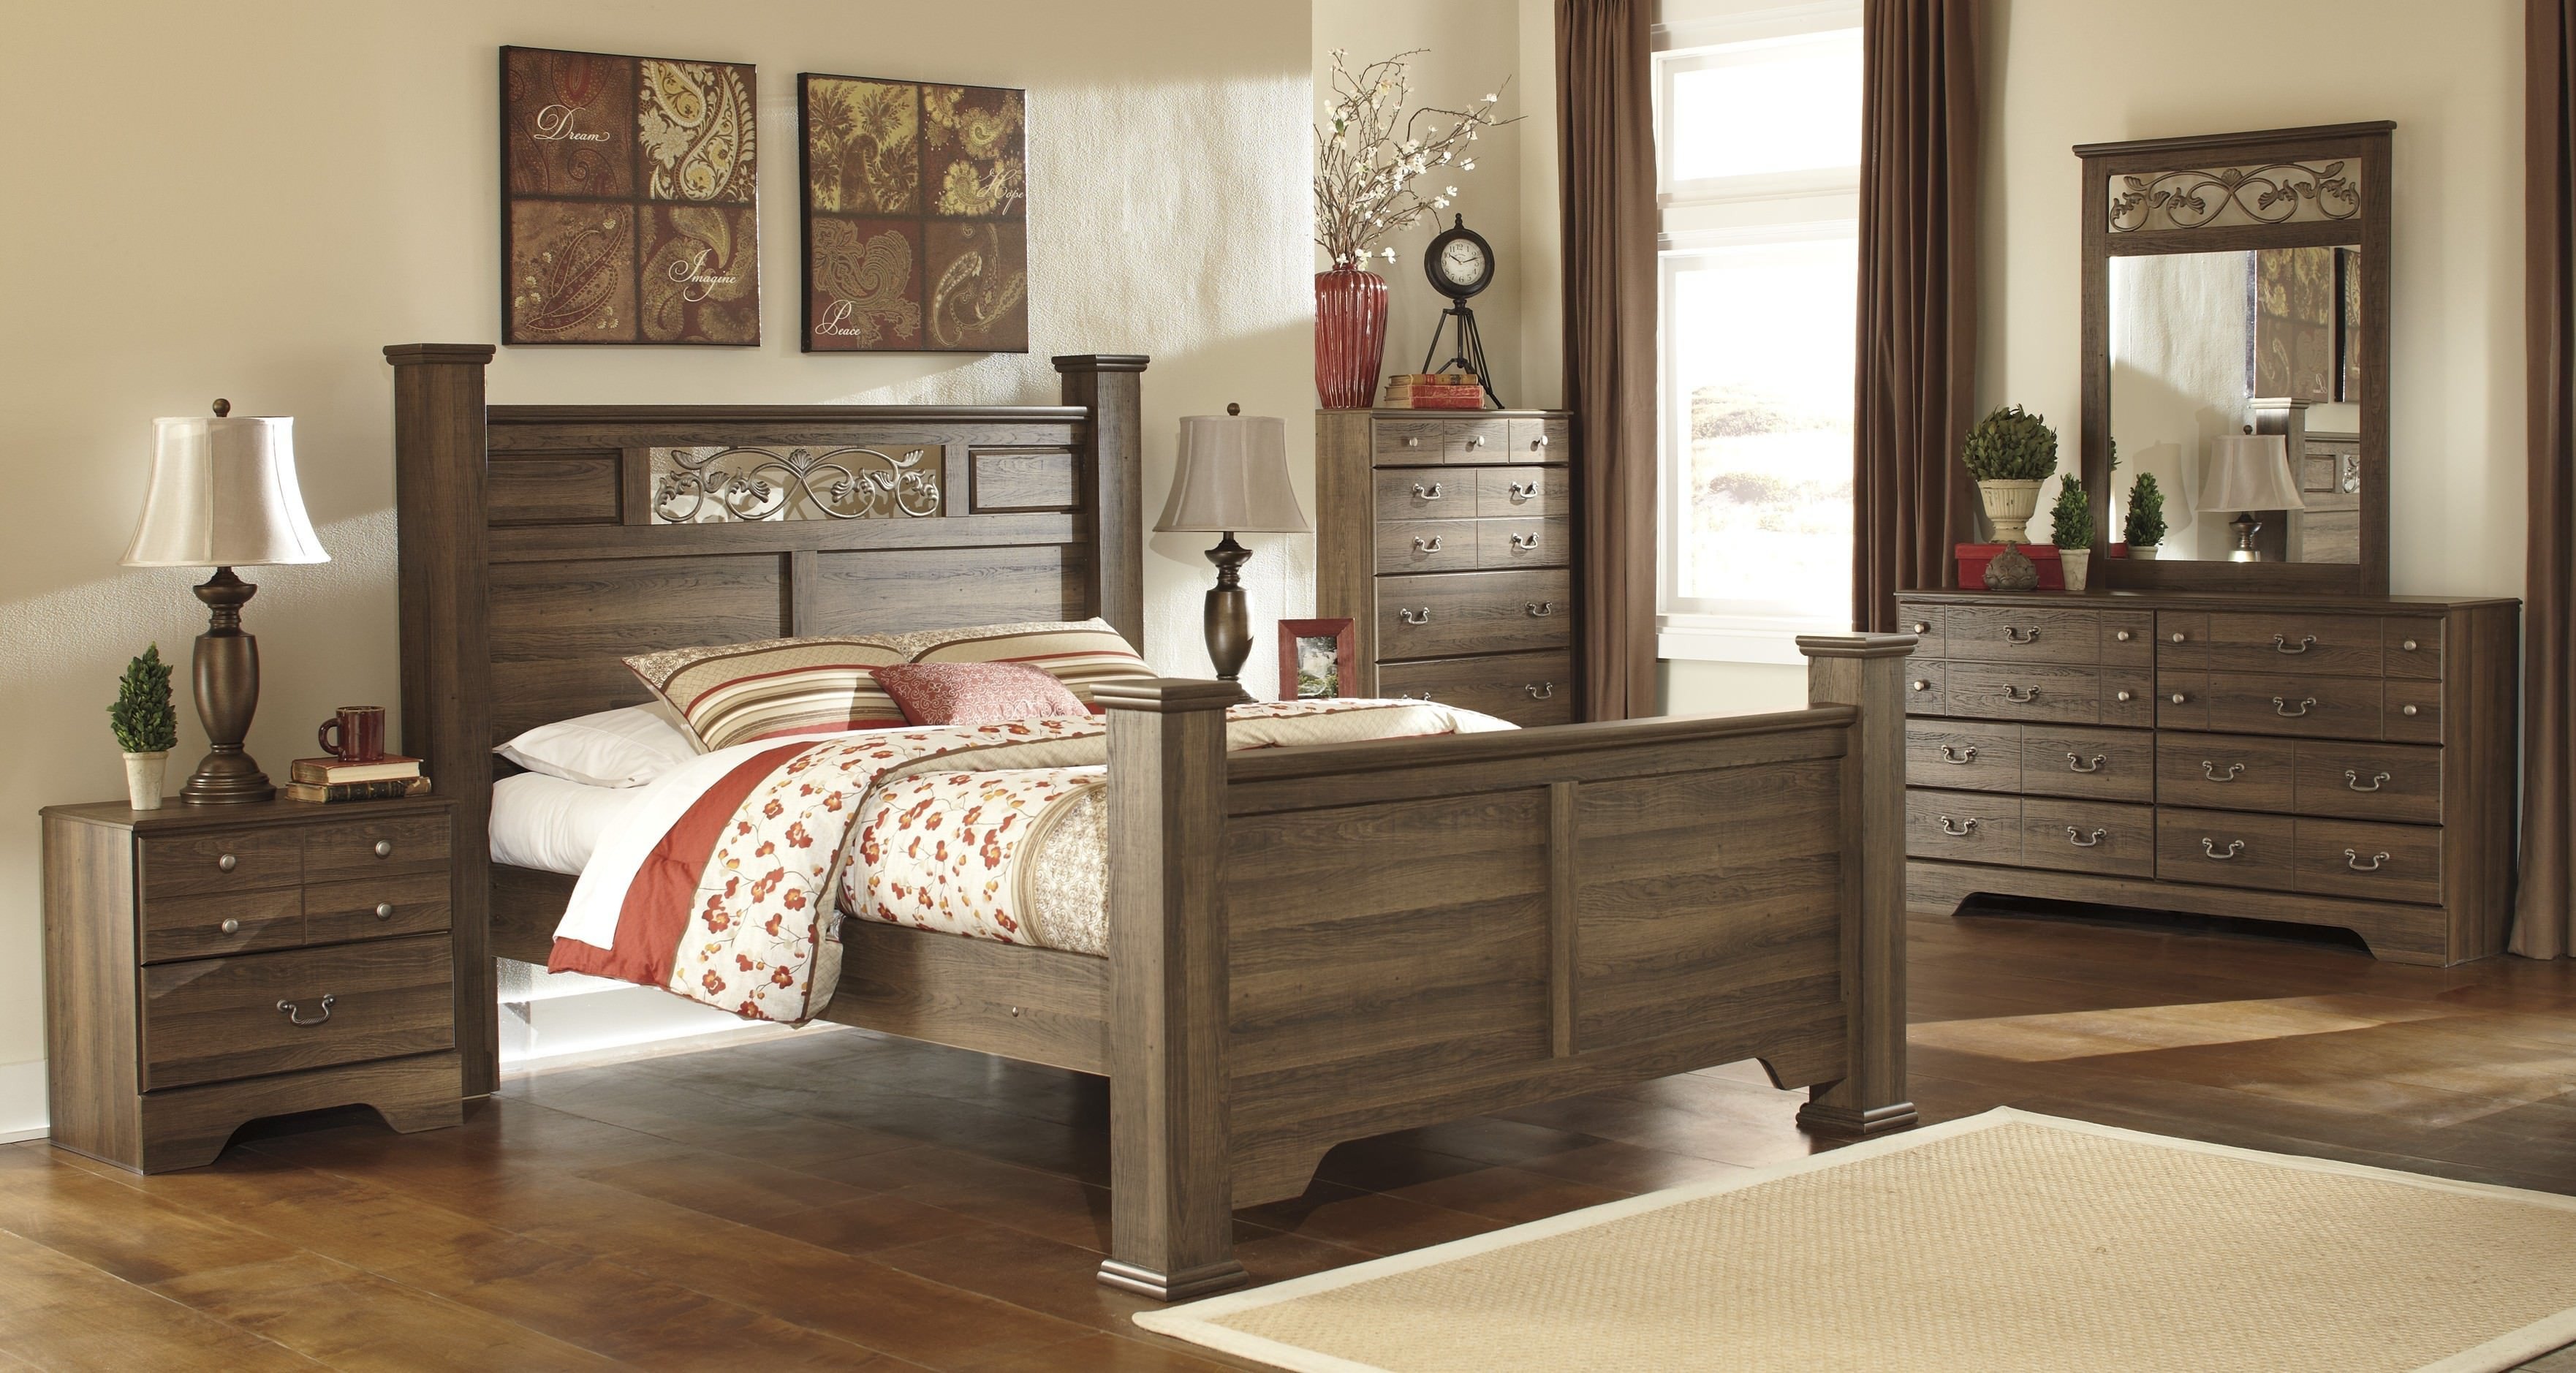 bob discount bedroom furniture set